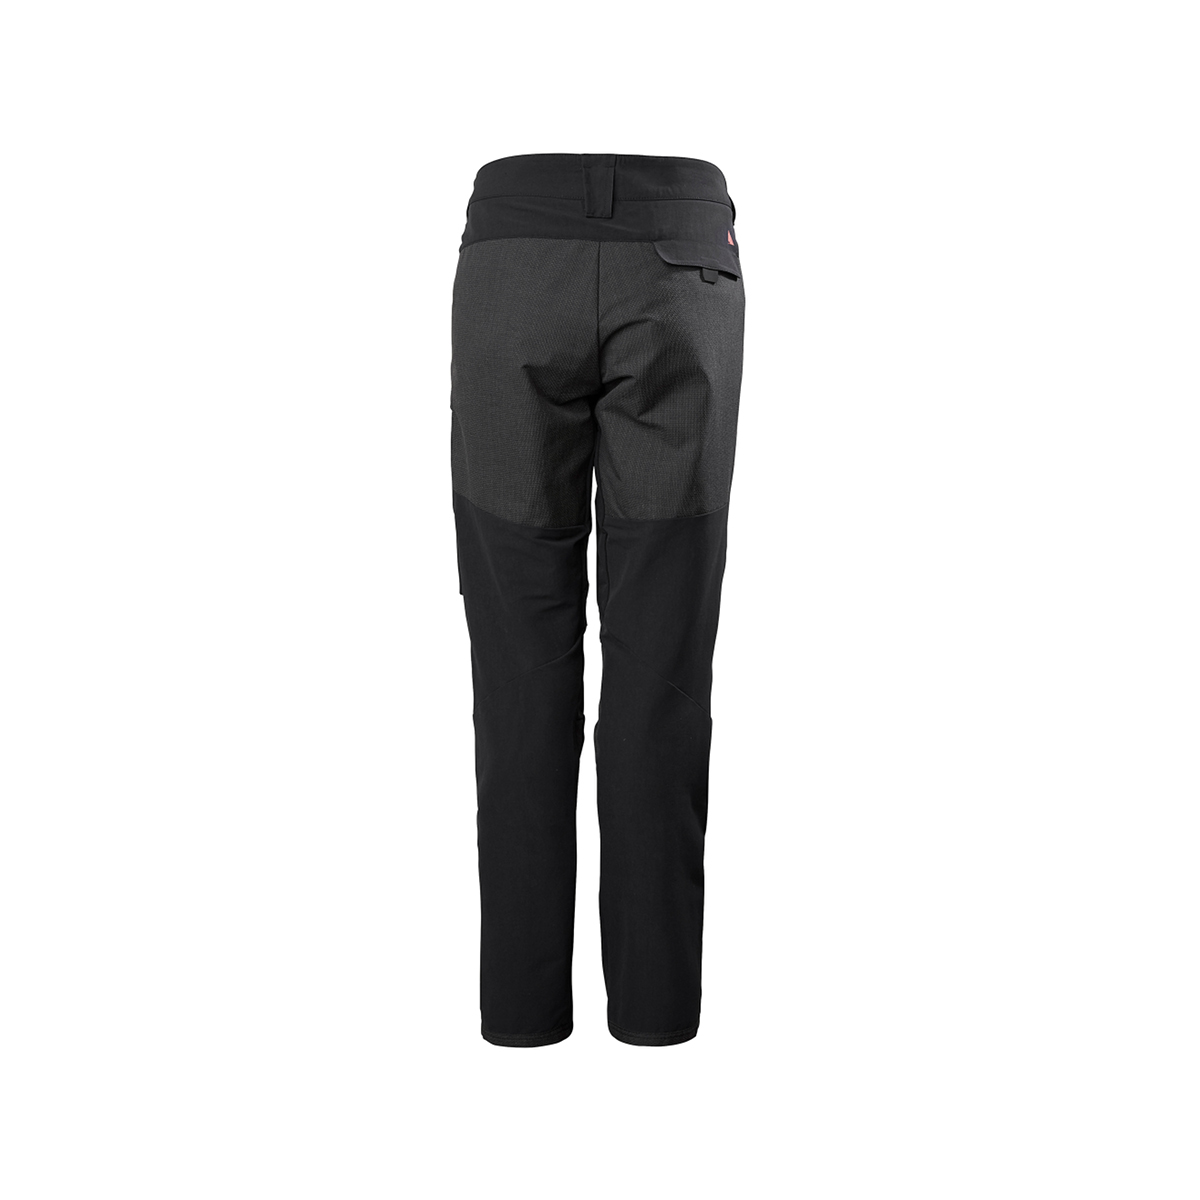 Musto Evolution Performance pantalon de voile 2.0 femme noir, taille 8 Long